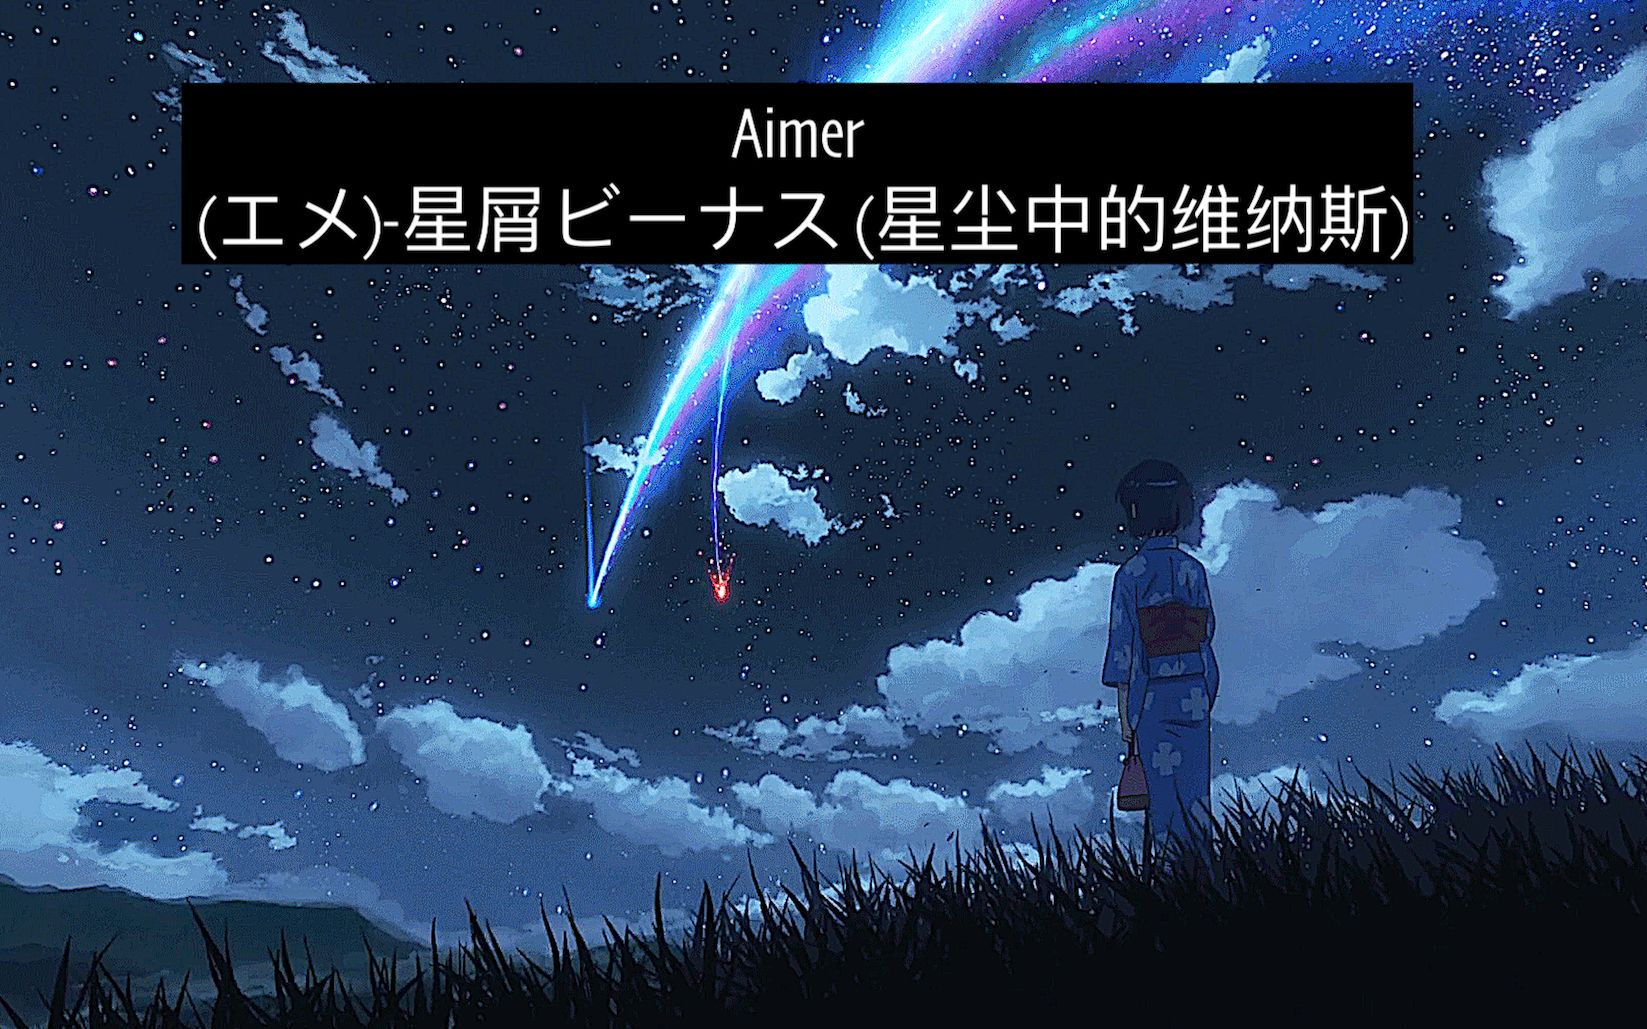 (エメ)-星屑ビーナス (星尘中的维纳斯)：Aimer